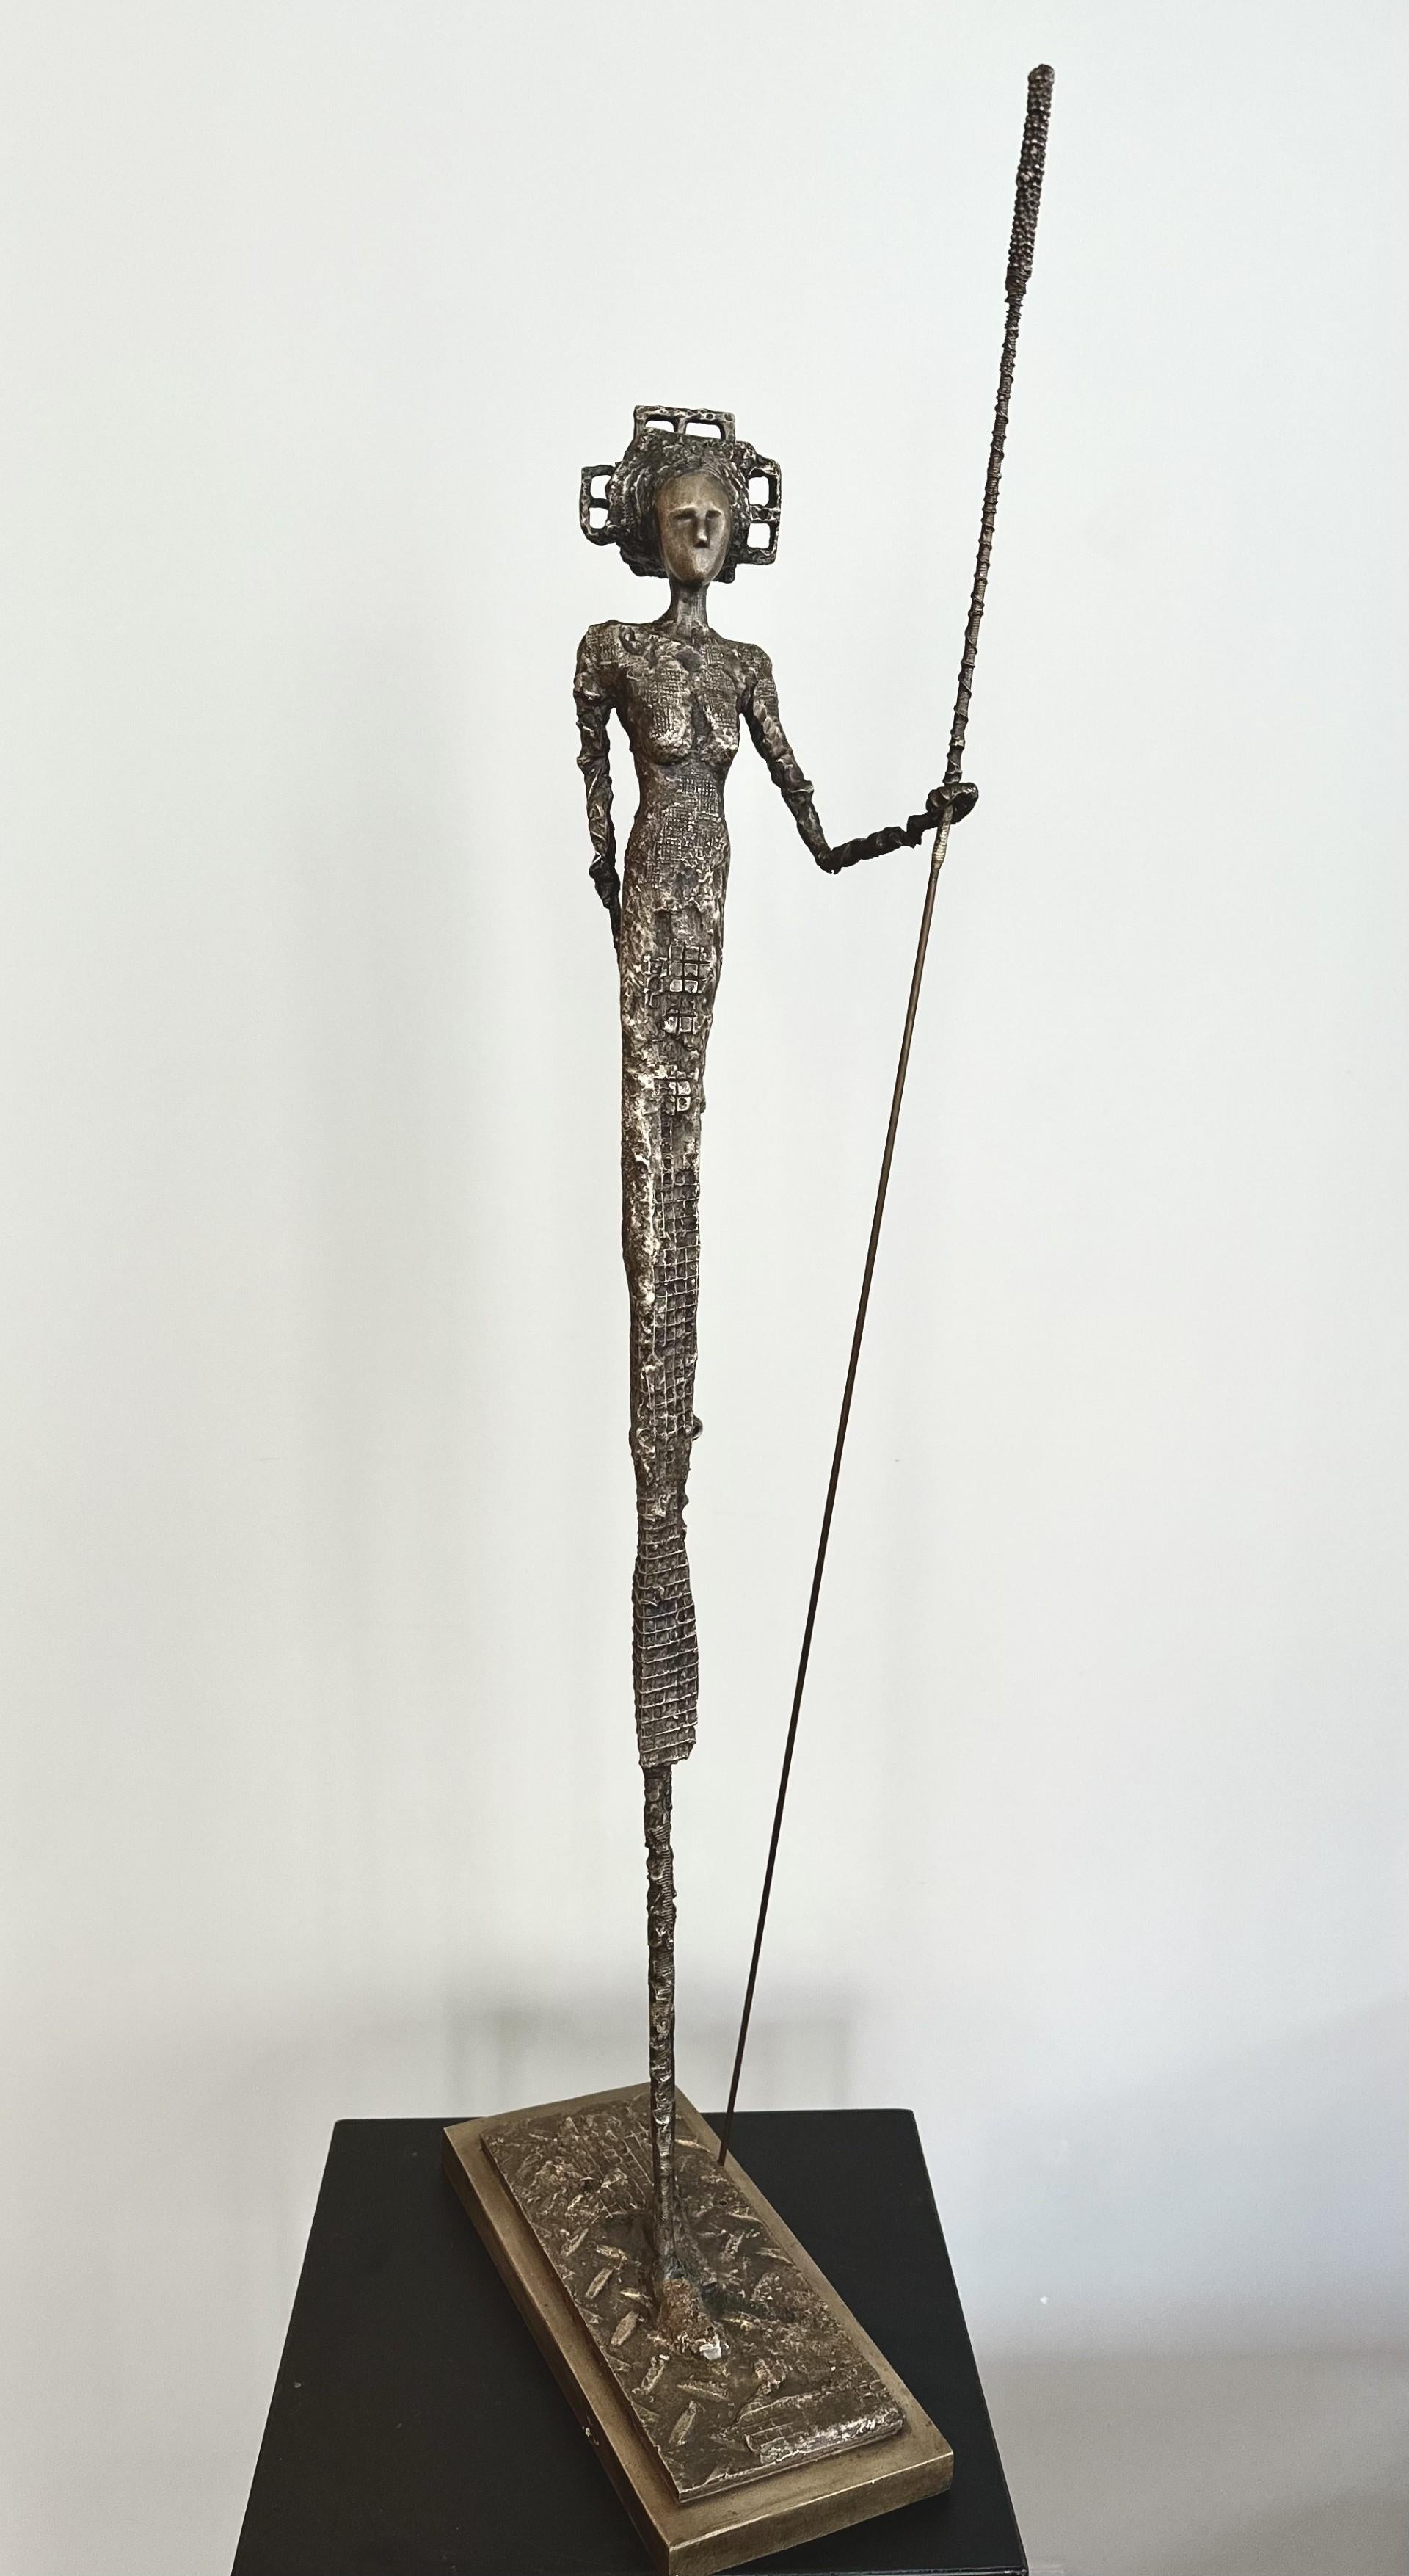 The Guardian - Sculpture by Anne de Villeméjane